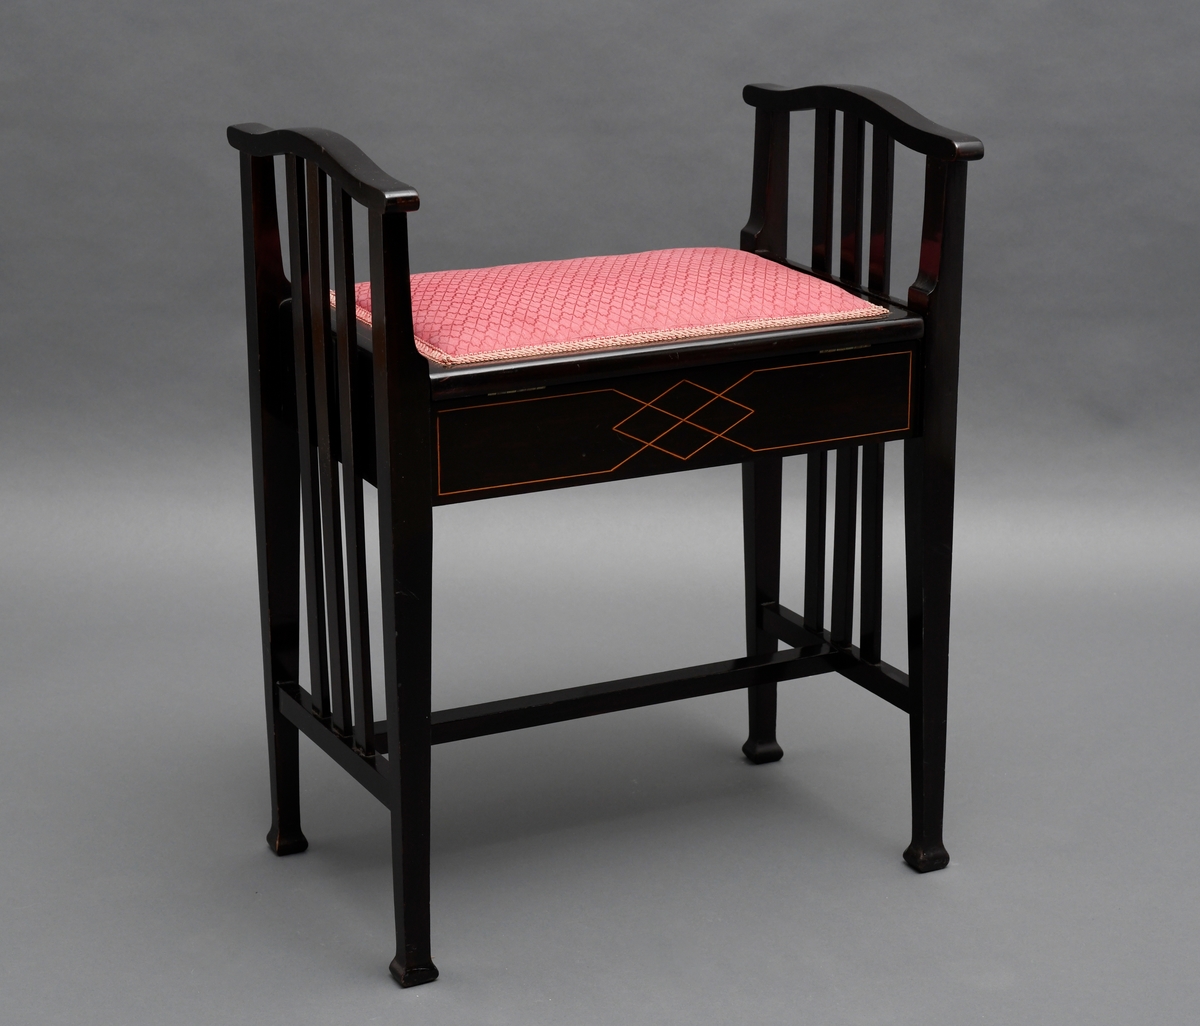 Pianokrakk, av tre, svart lakkert med intarsia. Et rom under setet, setet er hengslet og har tekstiltrekk.